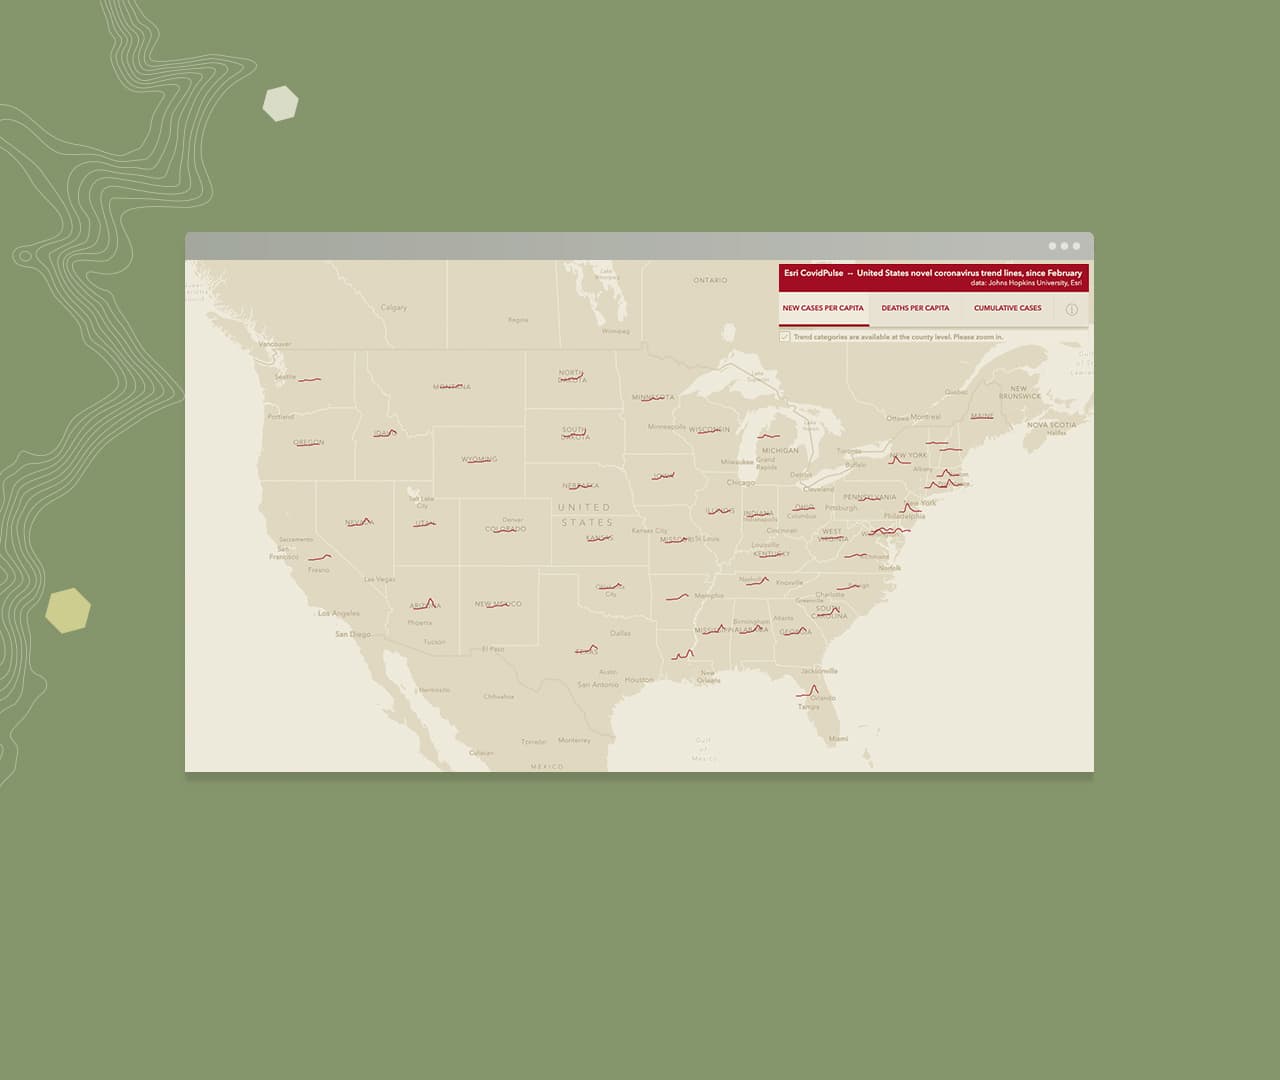 Большая бежевая карта Соединенных Штатов с красными линиями, проведенными над различными штатами